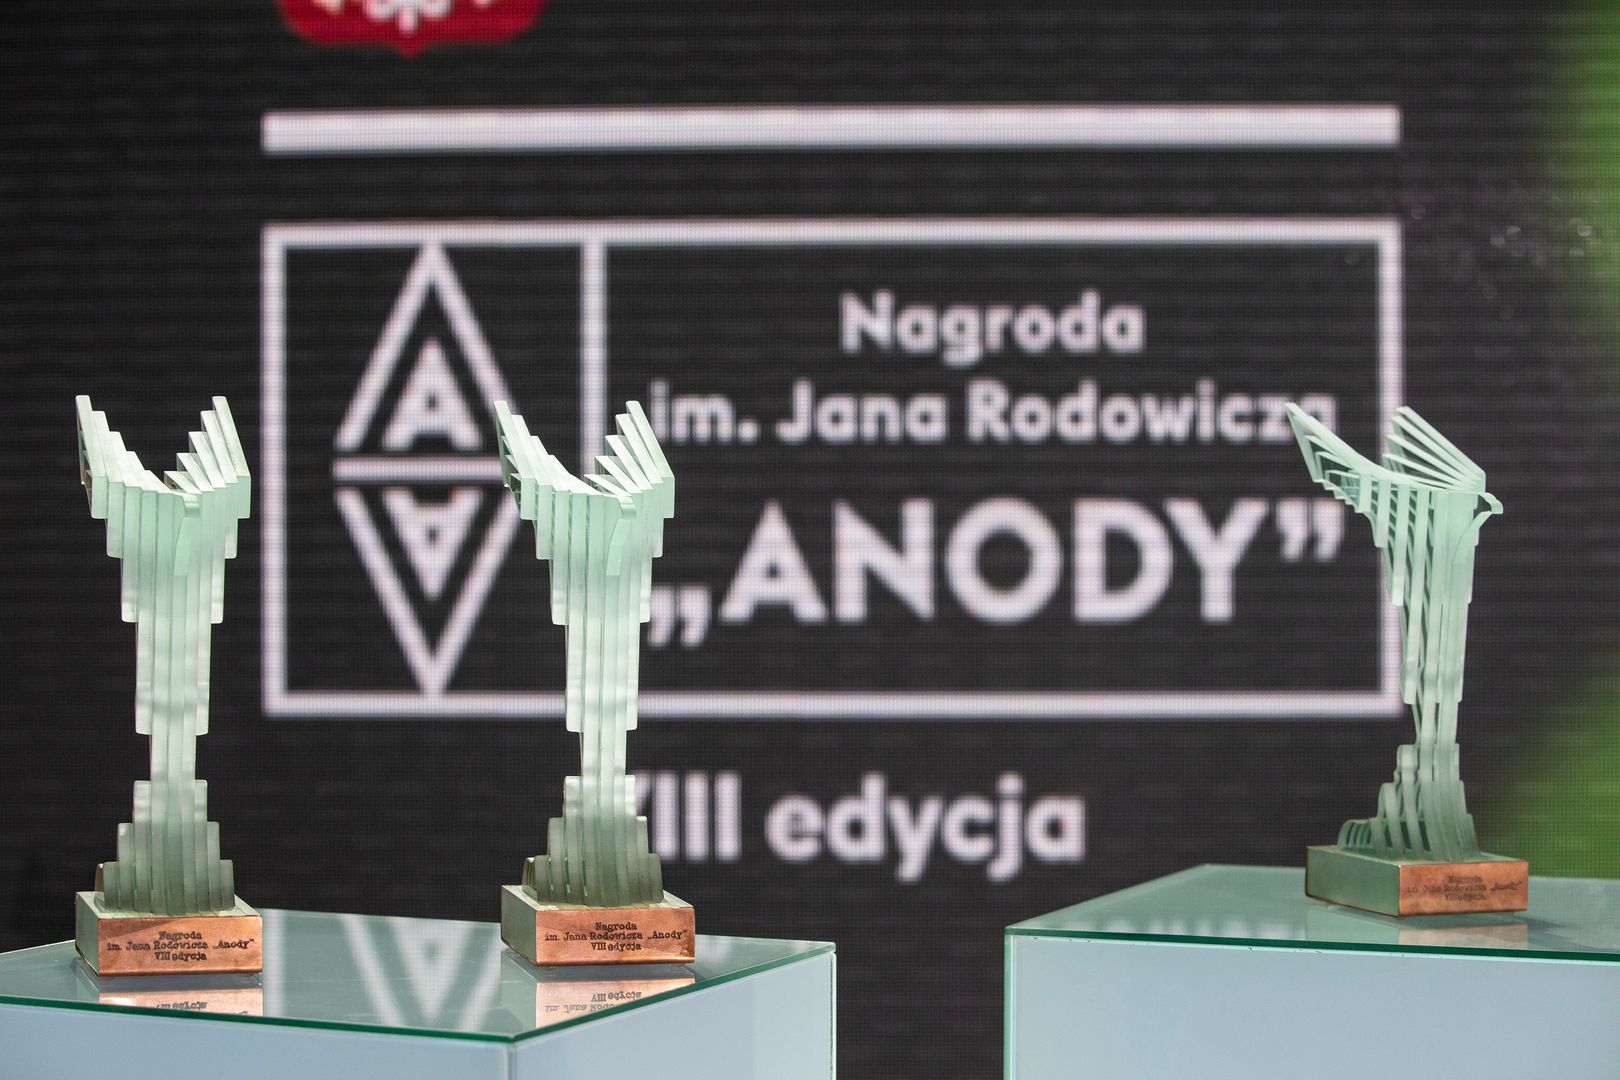 XI edycja Nagrody im. Jana Rodowicza „Anody”